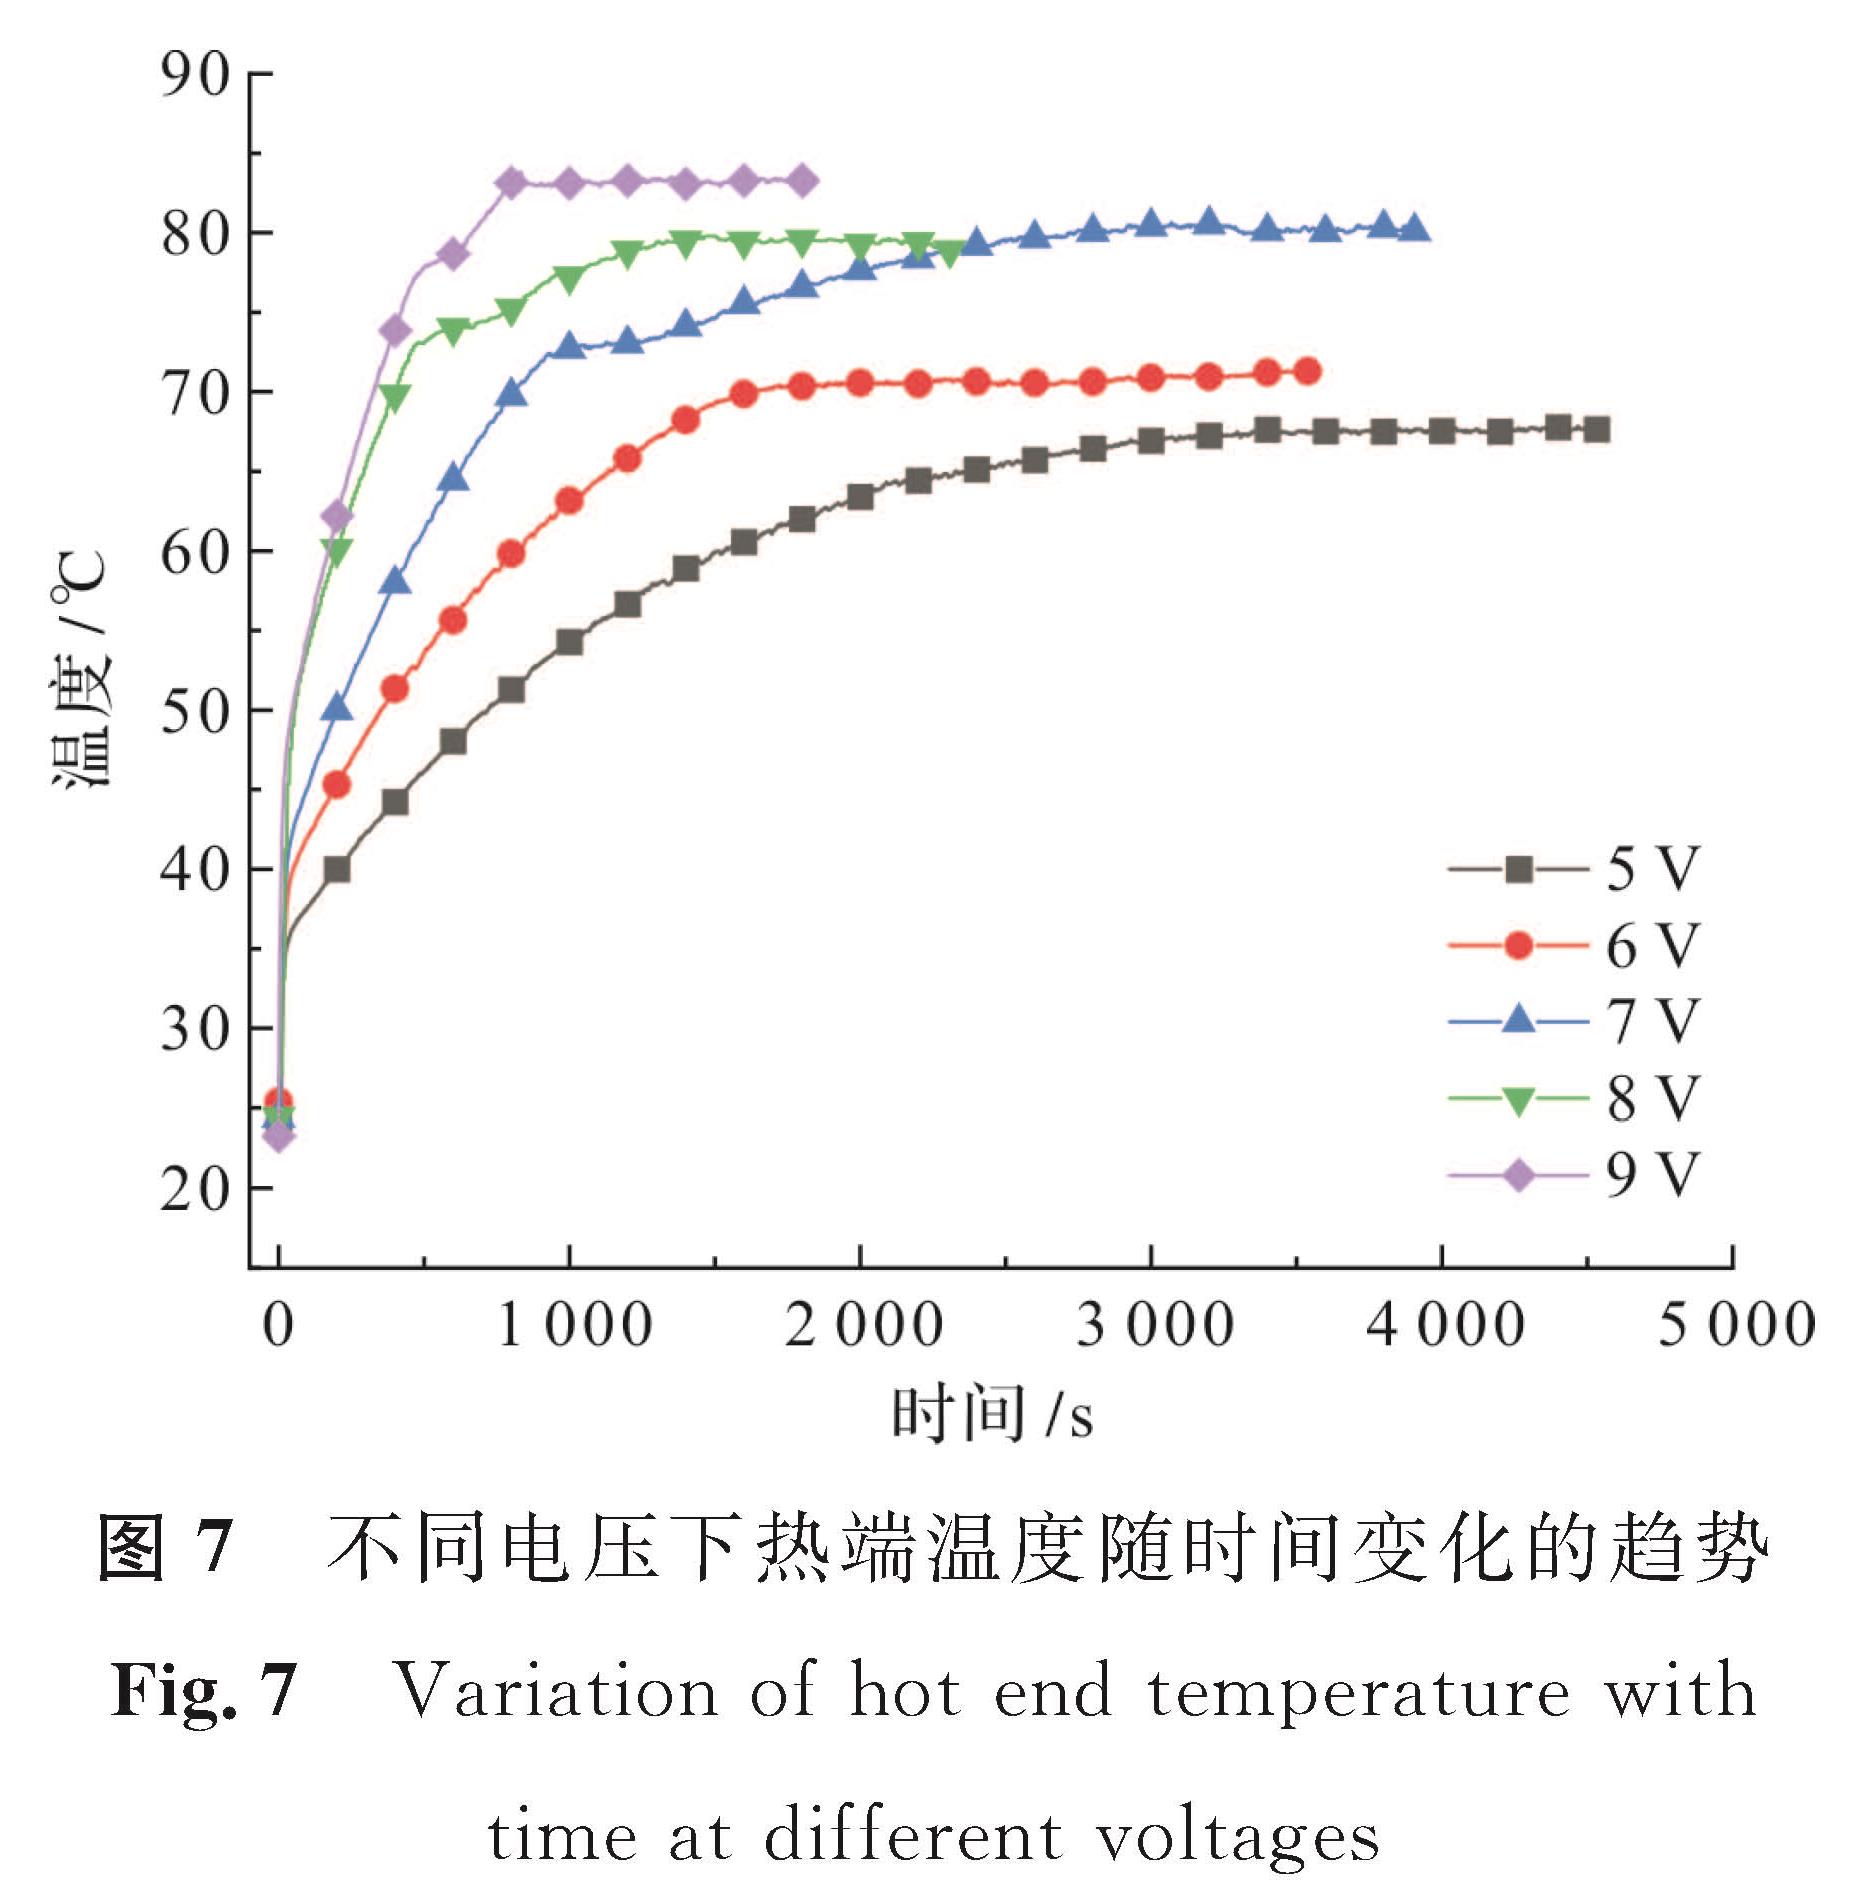 图7 不同电压下热端温度随时间变化的趋势<br/>Fig.7 Variation of hot end temperature with time at different voltages